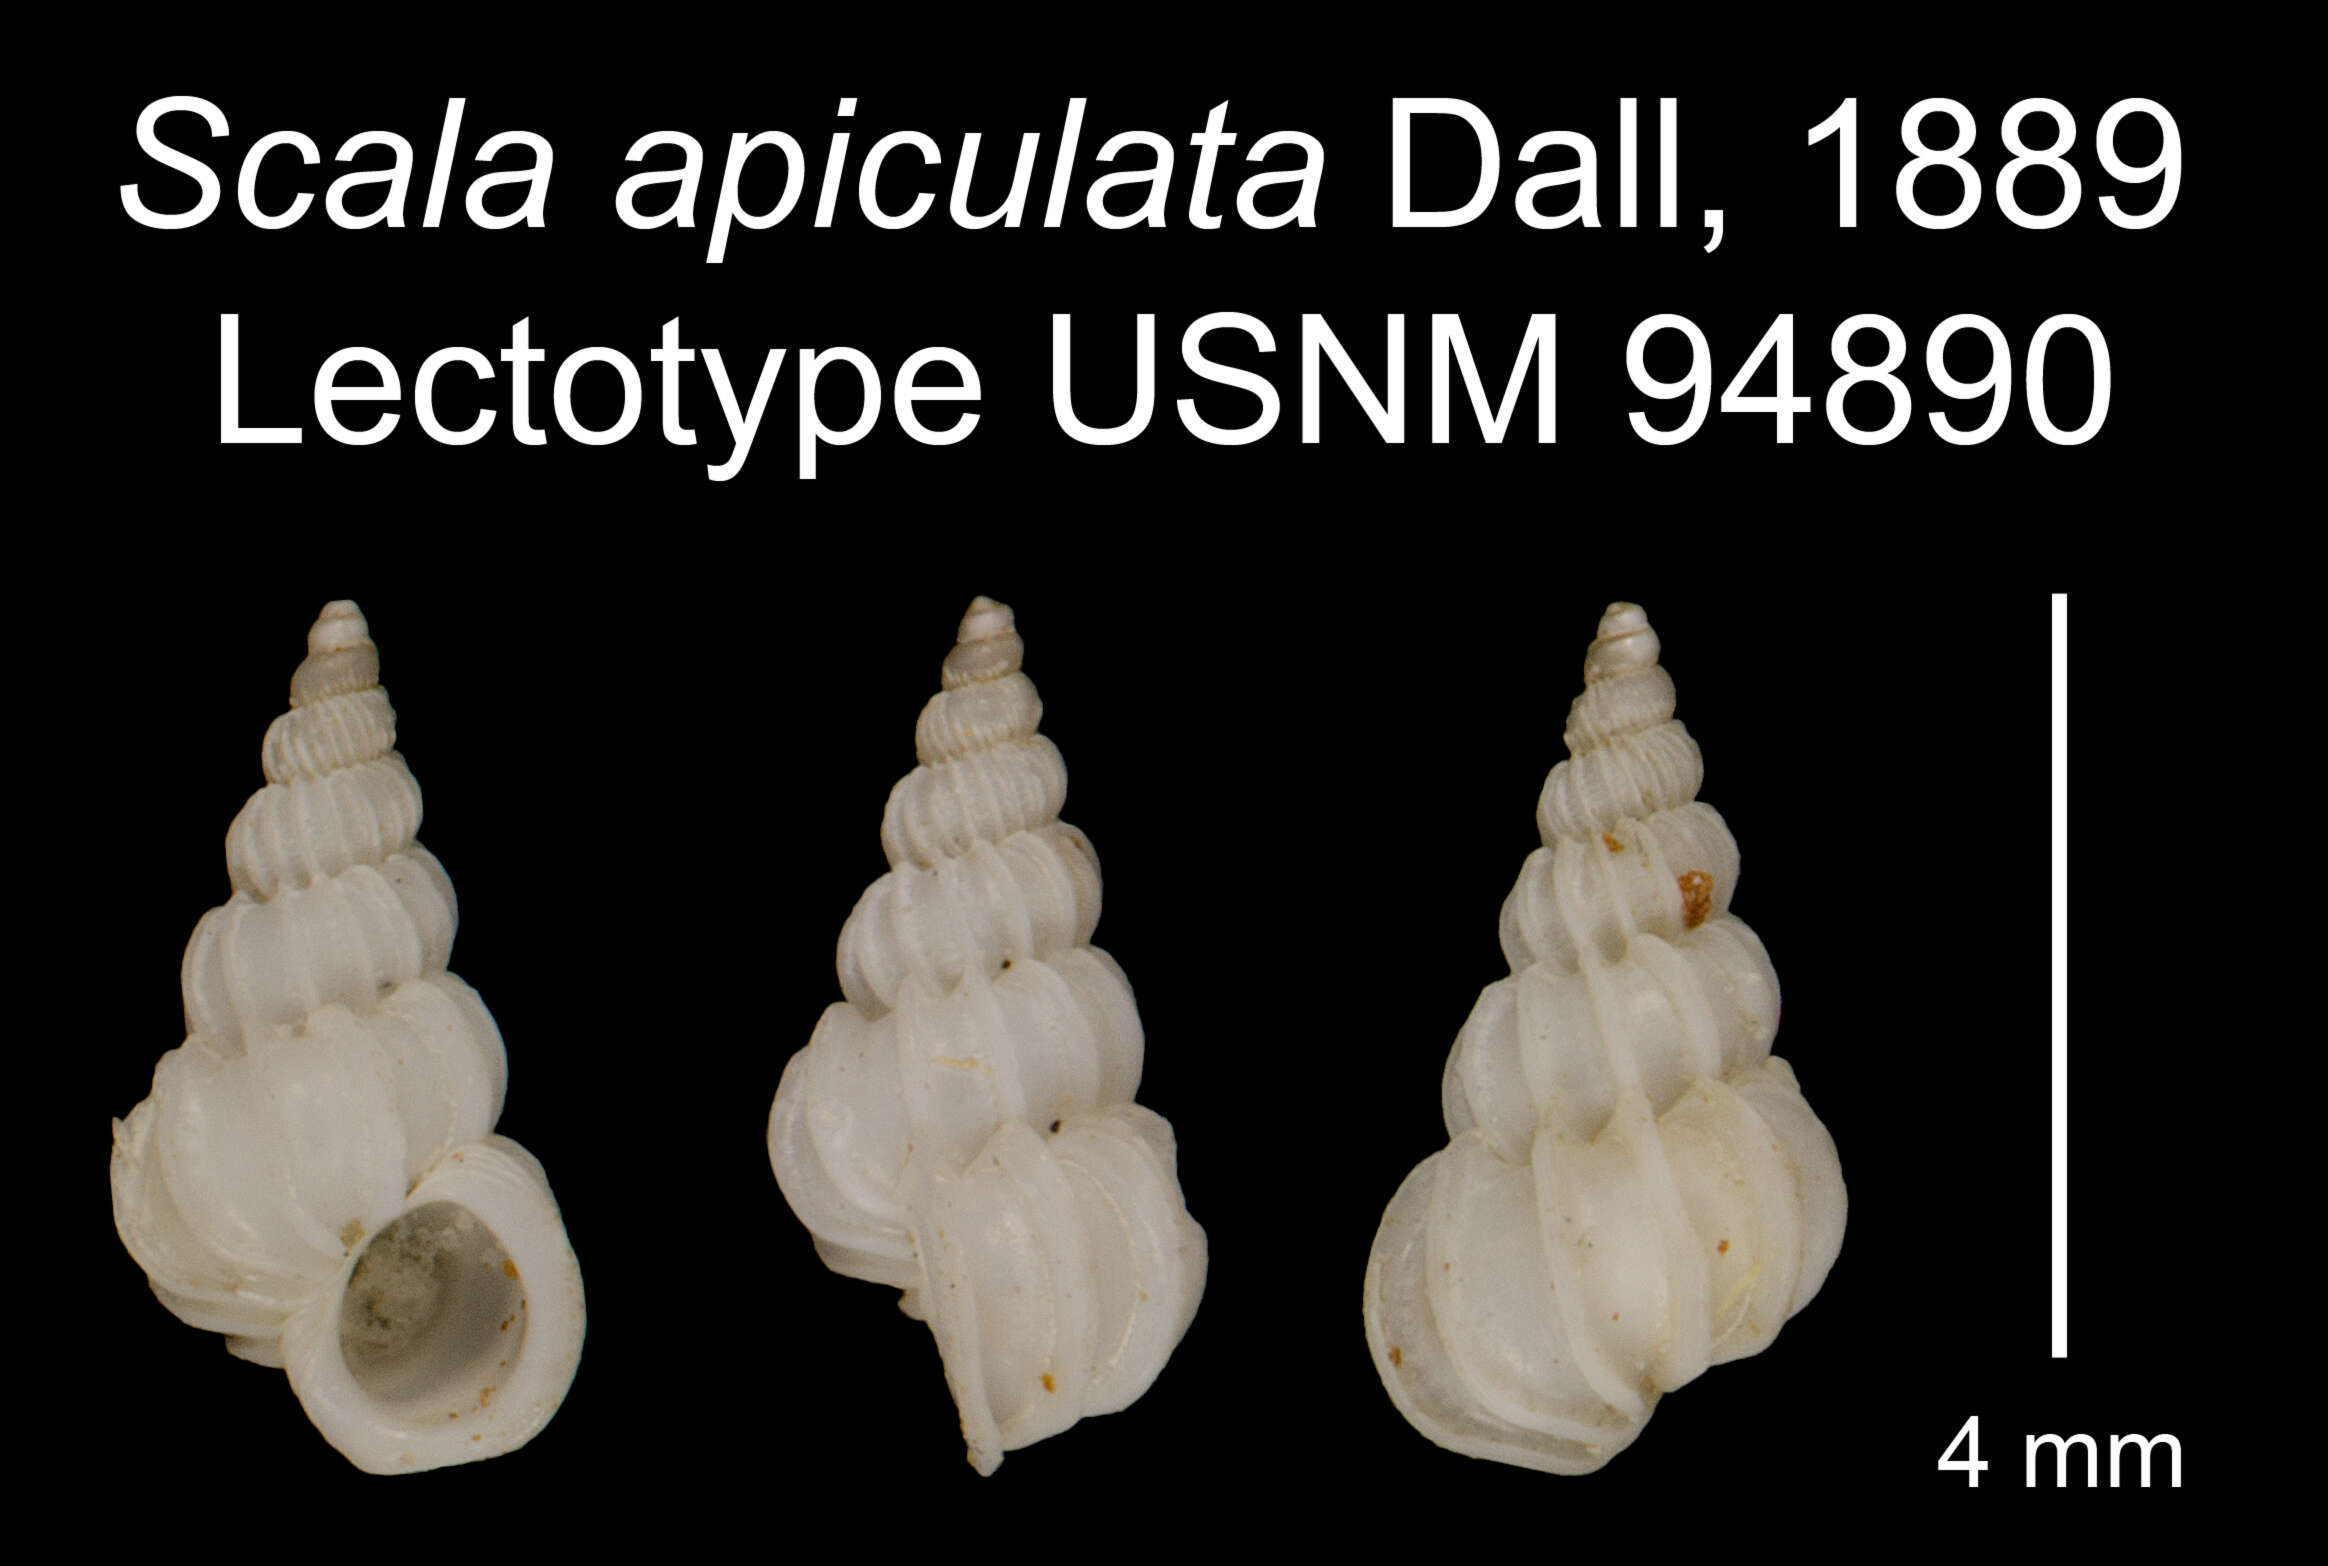 Image of Scala apiculata Dall 1889